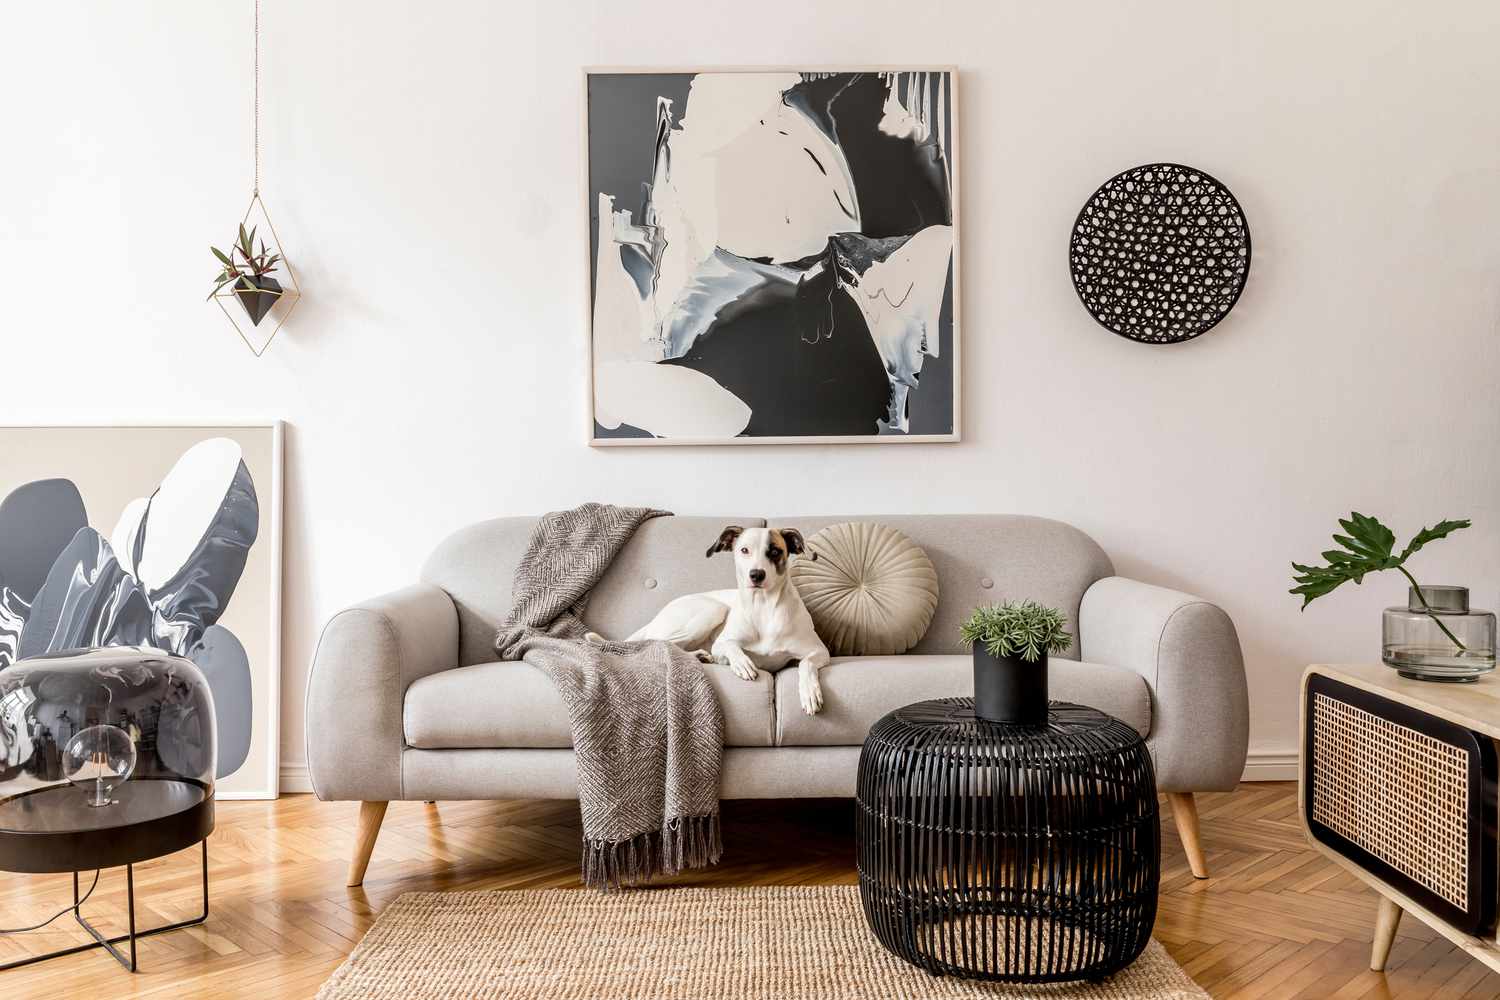 时尚和北欧现代公寓的客厅室内灰色沙发,木制衣柜设计,黑色的桌子,灯,abstrac画在墙上。美丽的狗躺在沙发上。家居装饰。